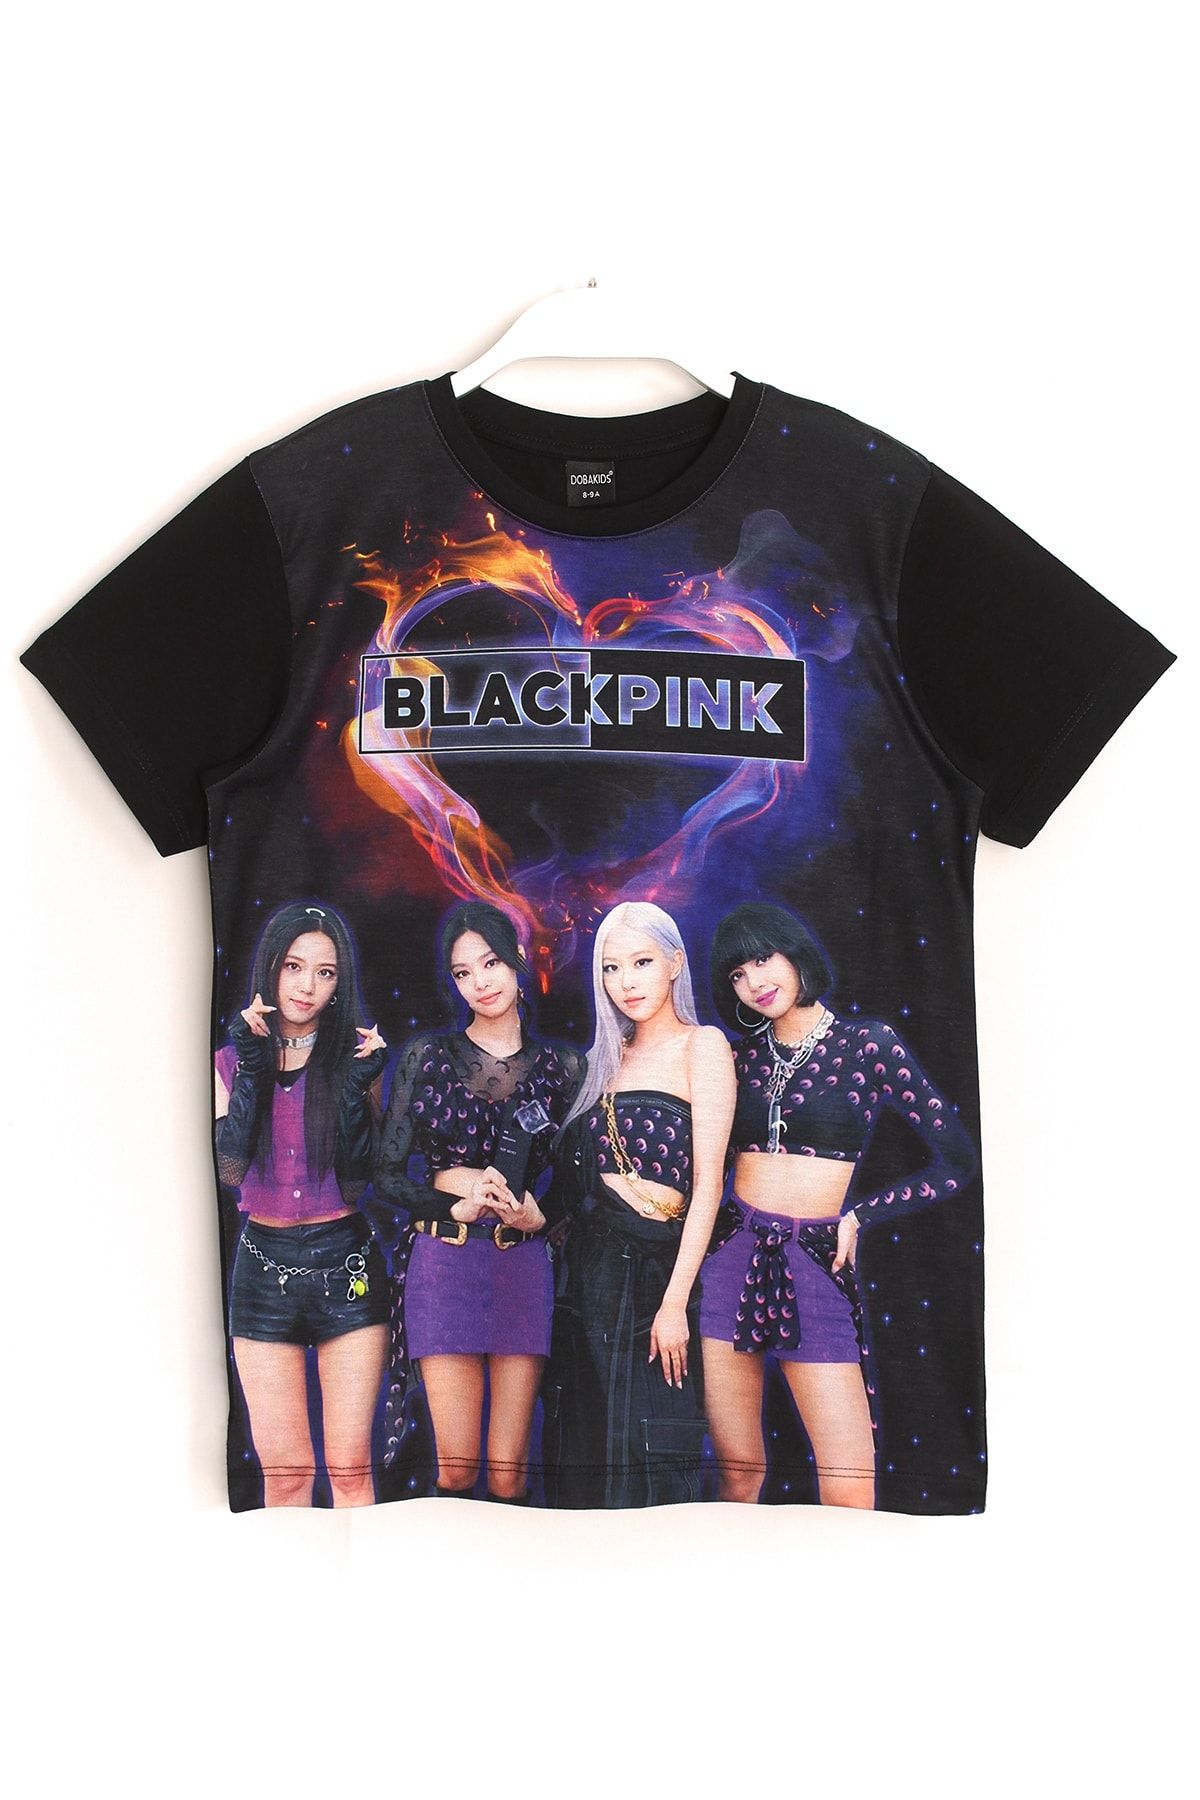 DobaKids Blackpink K-pop Grup Dijital Baskı Kız Çocuk T-shirt Siyah Renk